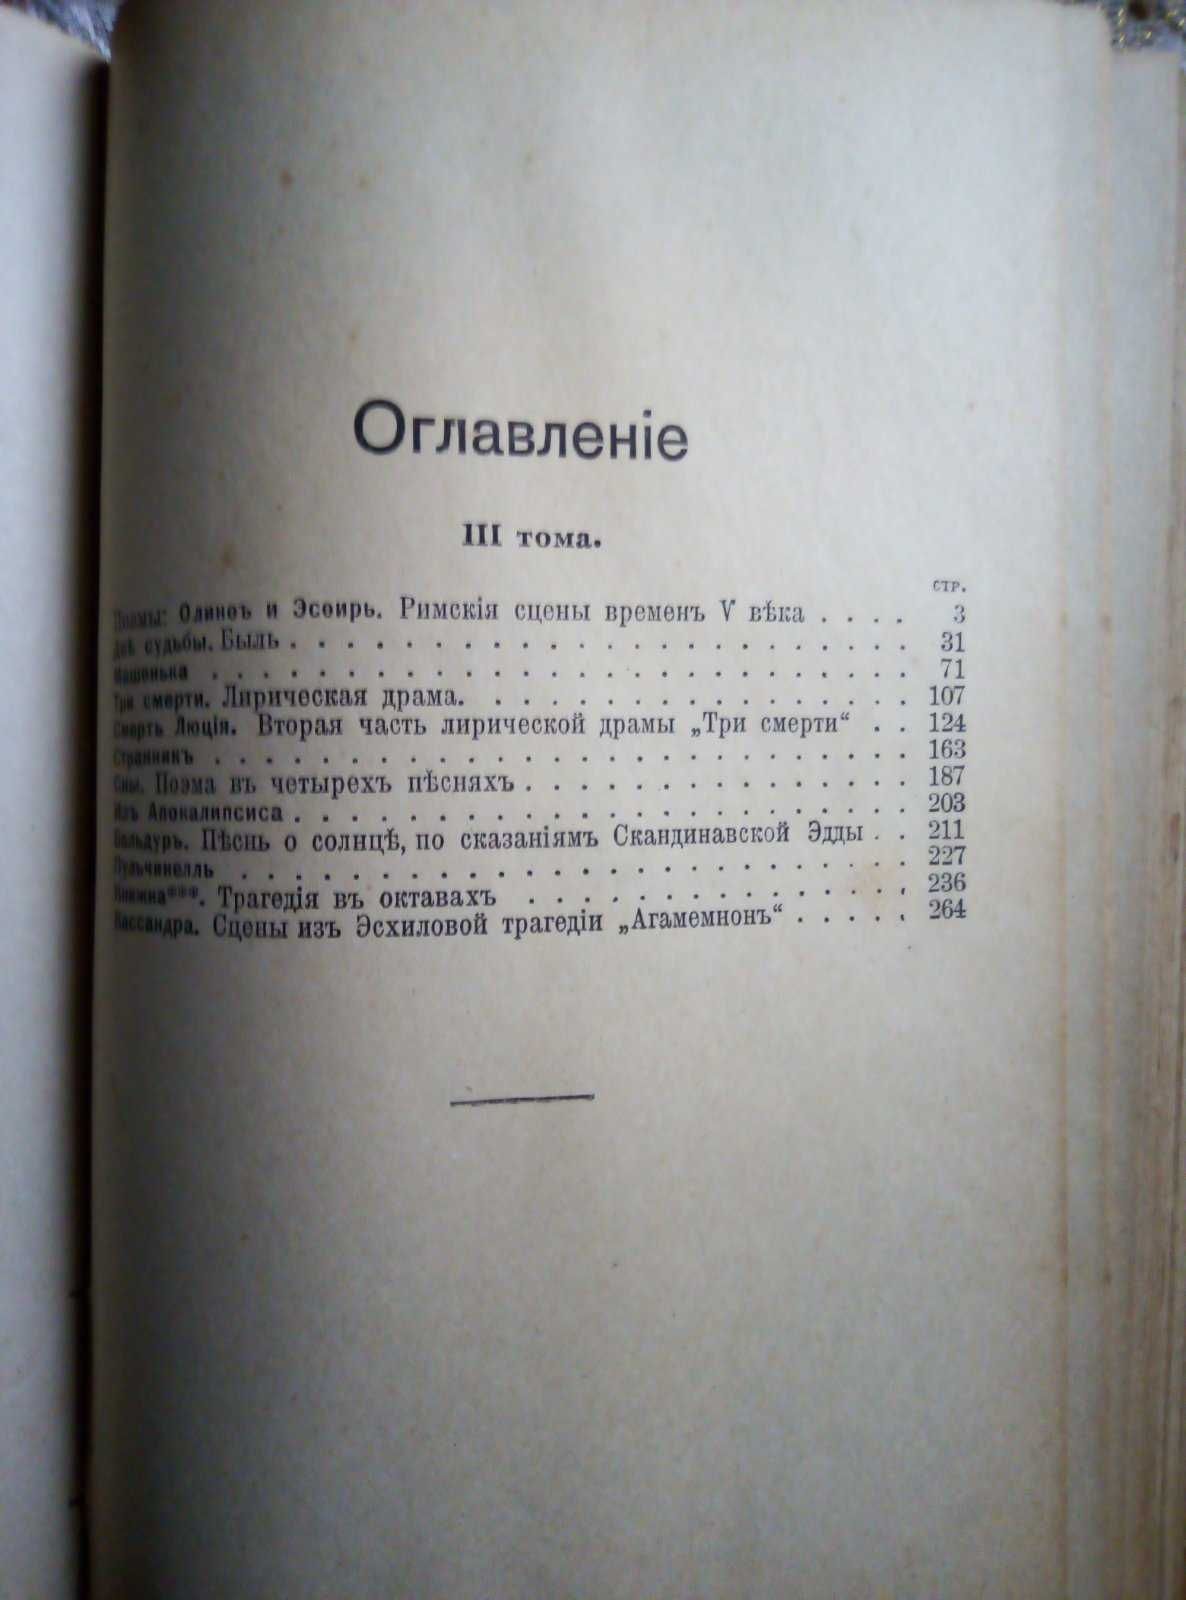 Полное собрание сочинений А.Н. Майков, 1914 г.